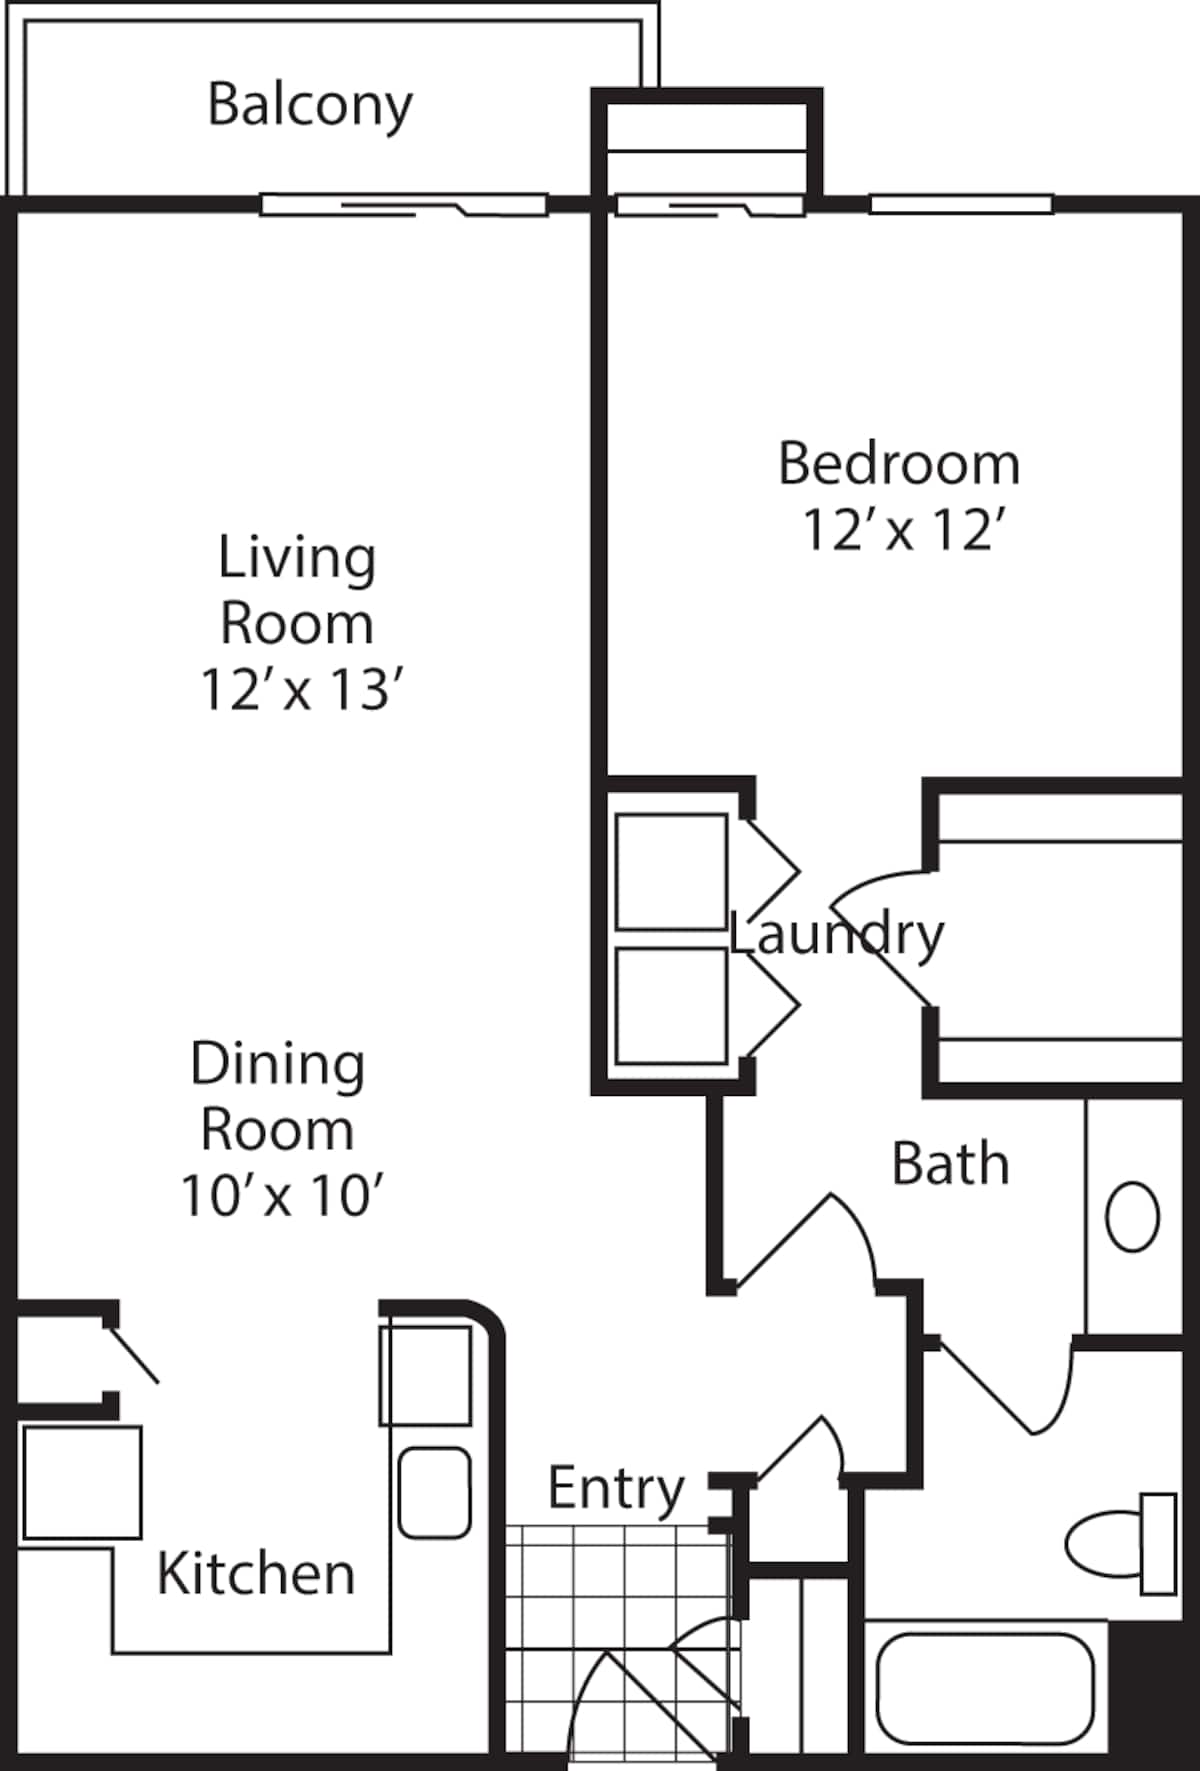 Floorplan diagram for Pinnacle, showing 1 bedroom